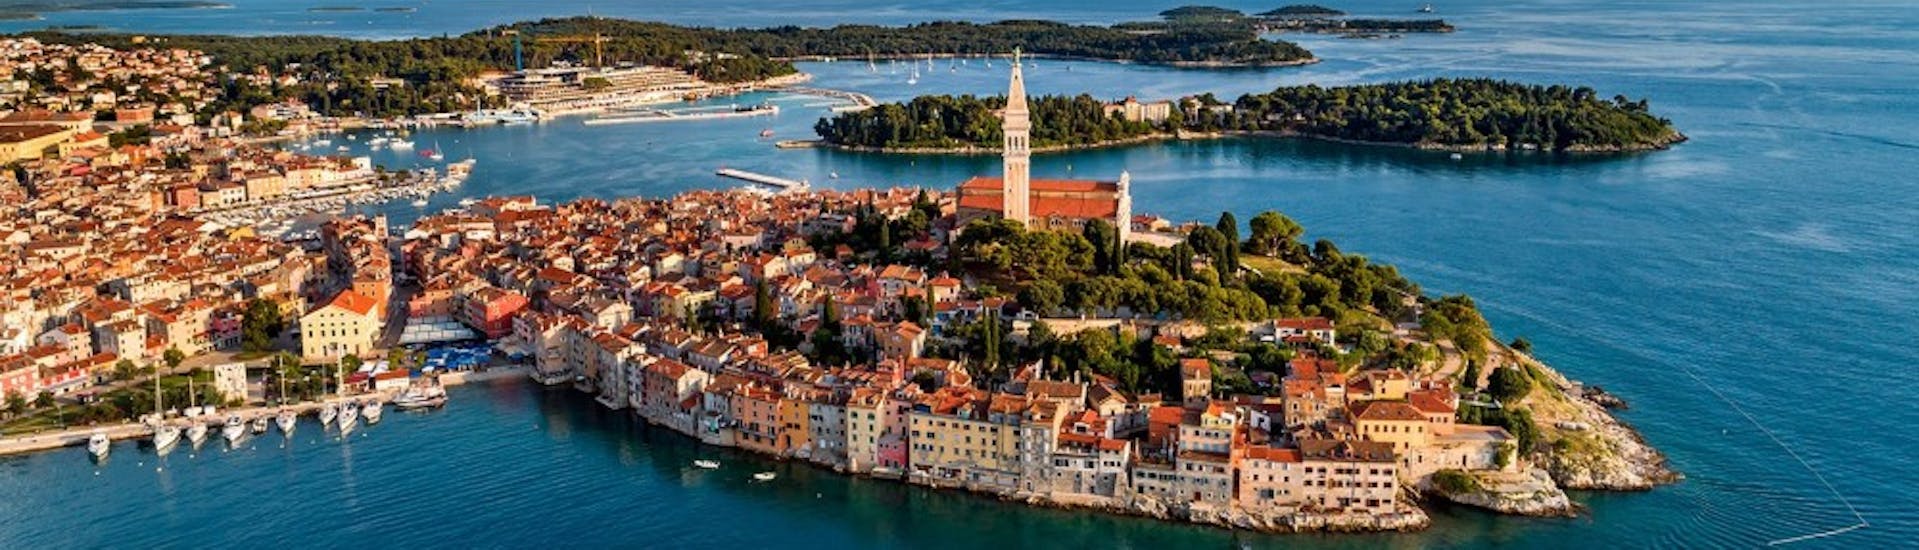 Vue de la ville historique de Rovinj, que vous allez visiter pendant la Balade en bateau privé à Rovinj depuis Fažana avec Sea Tours Istria Fažana.